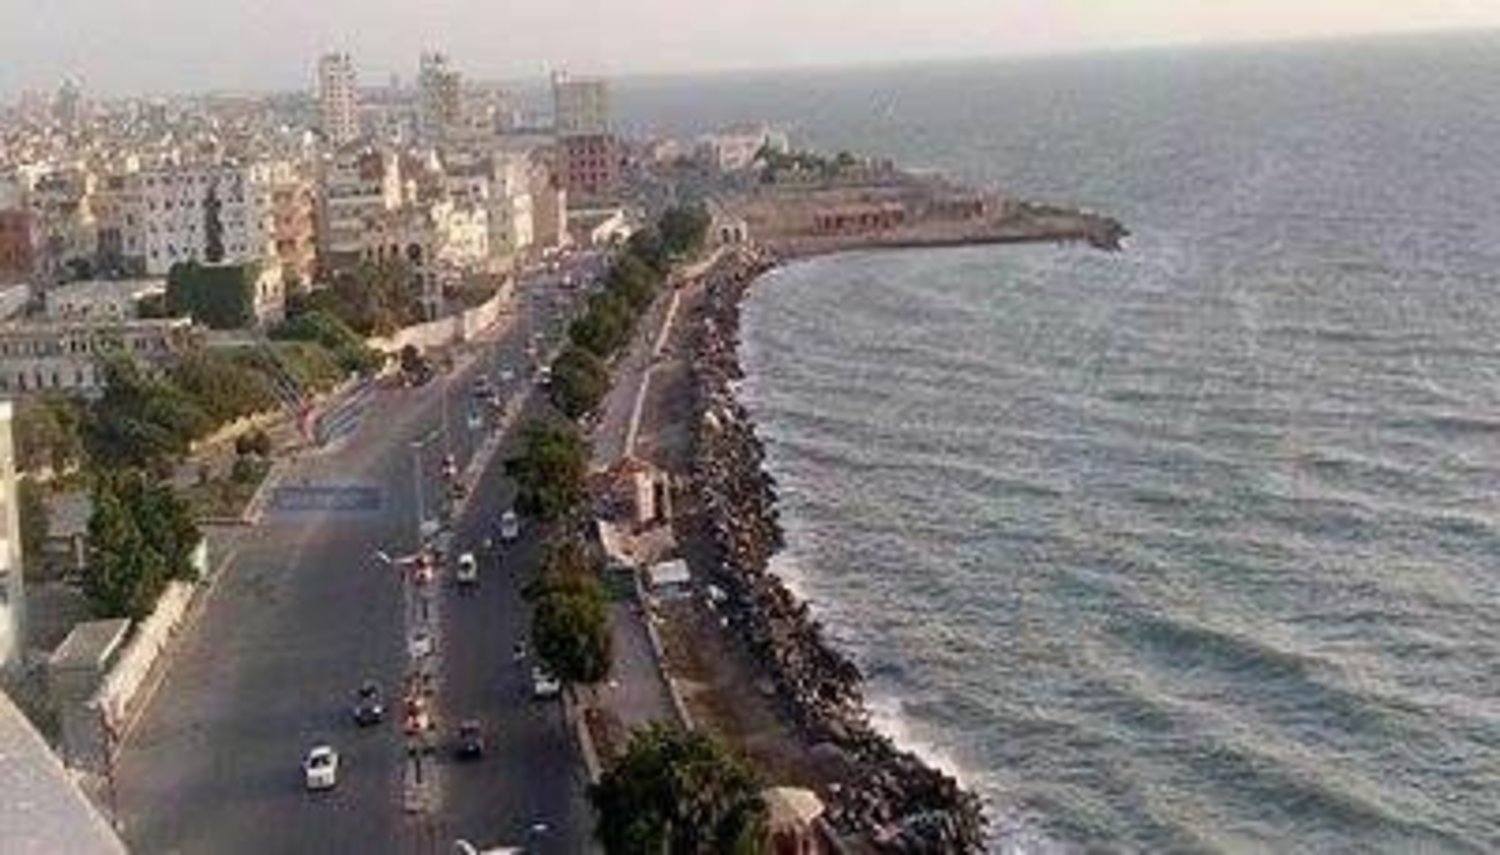 البنك الدولي يتوقع انكماش الاقتصاد اليمني بسبب توقف تصدير النفط